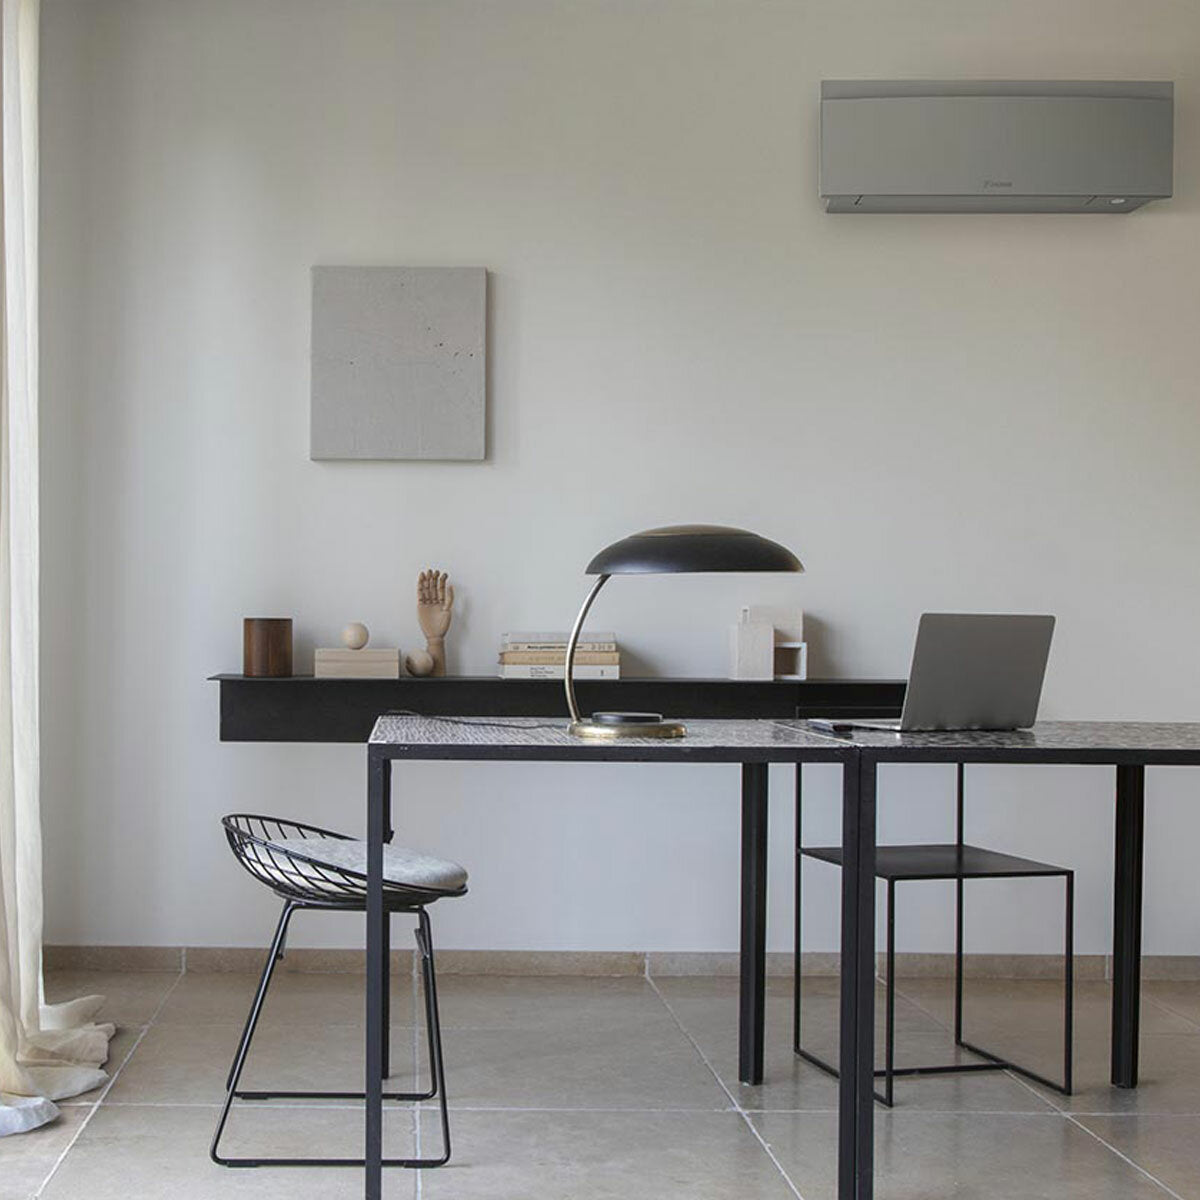 Daikin Emura 3 trial split air conditioner 7000+7000+18000 BTU inverter A++ wifi outdoor unit 5 kW Silver